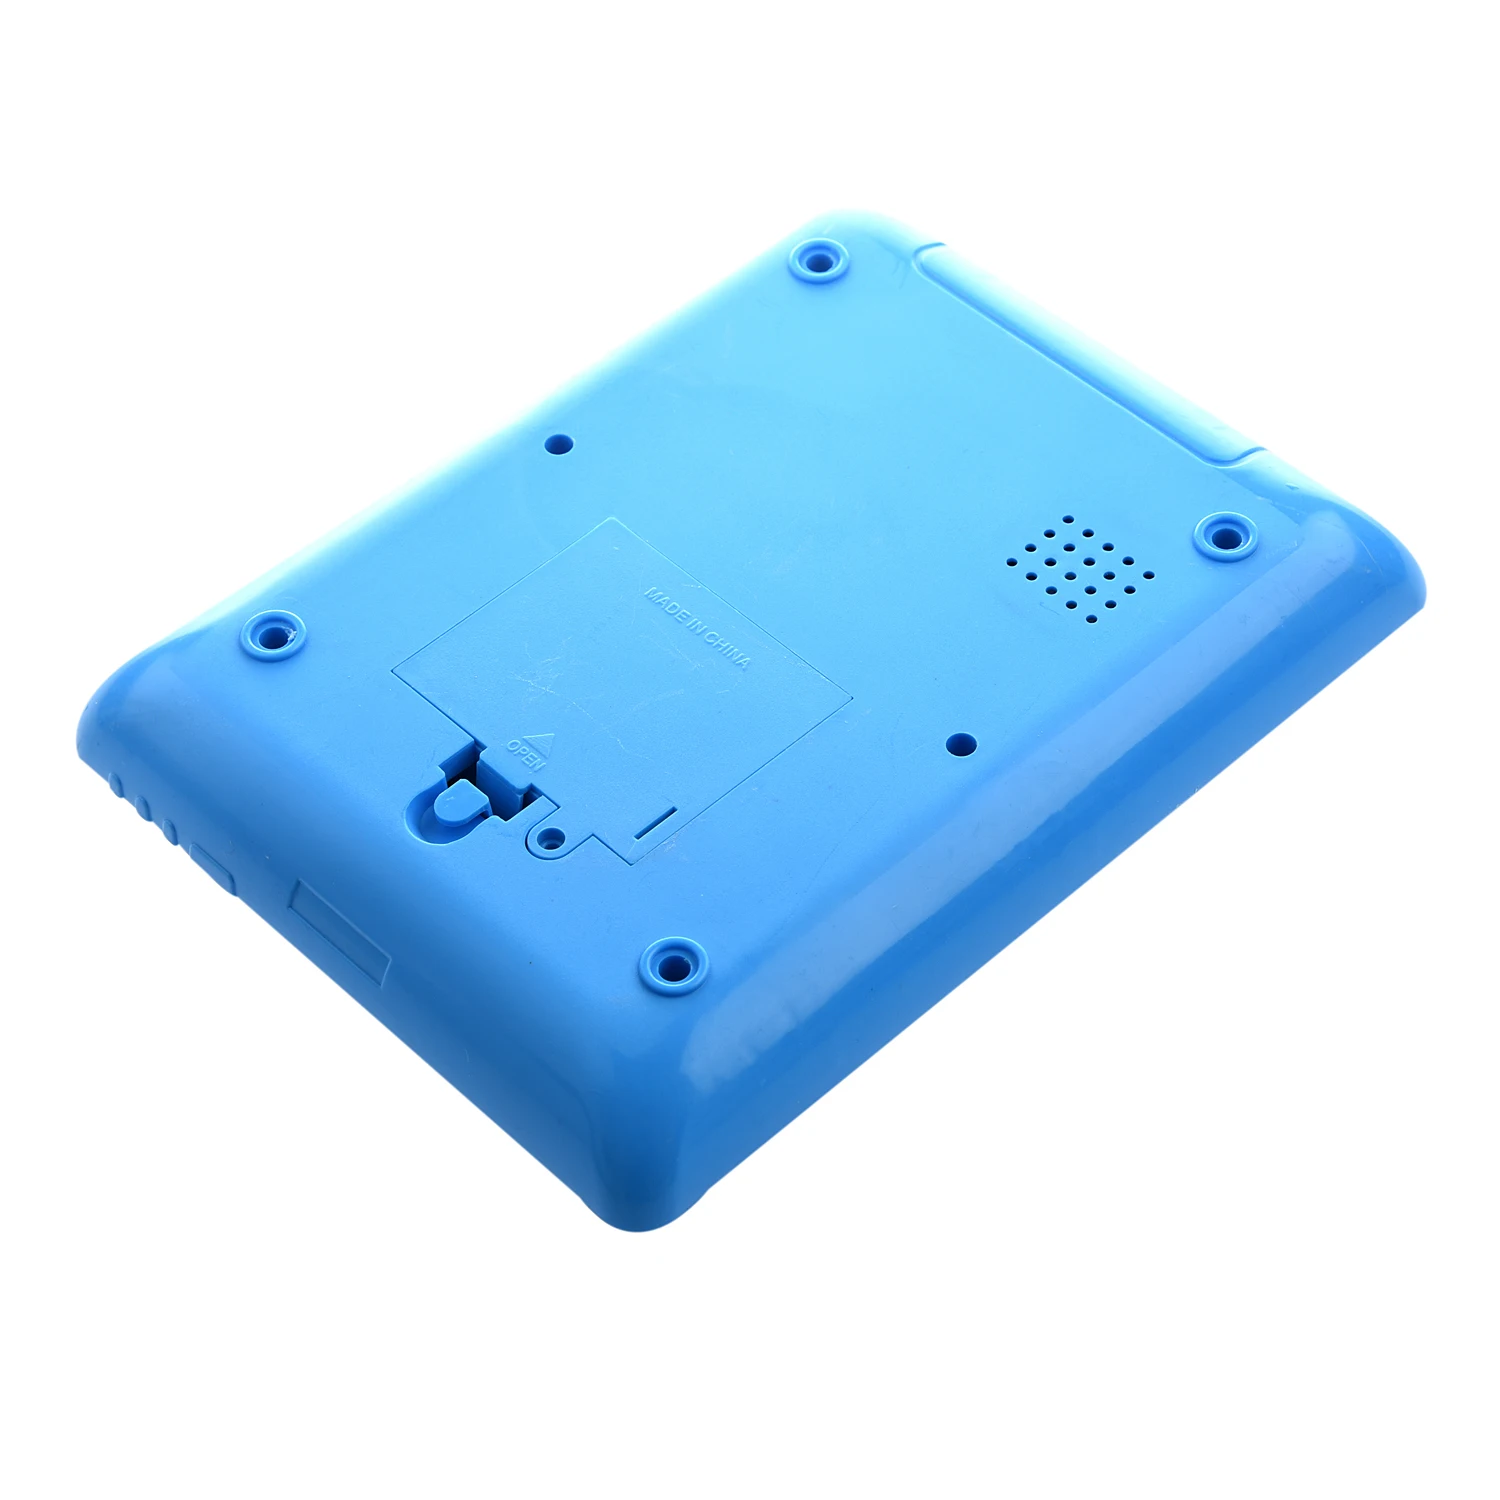 ABWE лучшая новейший Английский Компьютер обучающая машина планшет Pad детская игрушка подарок синий